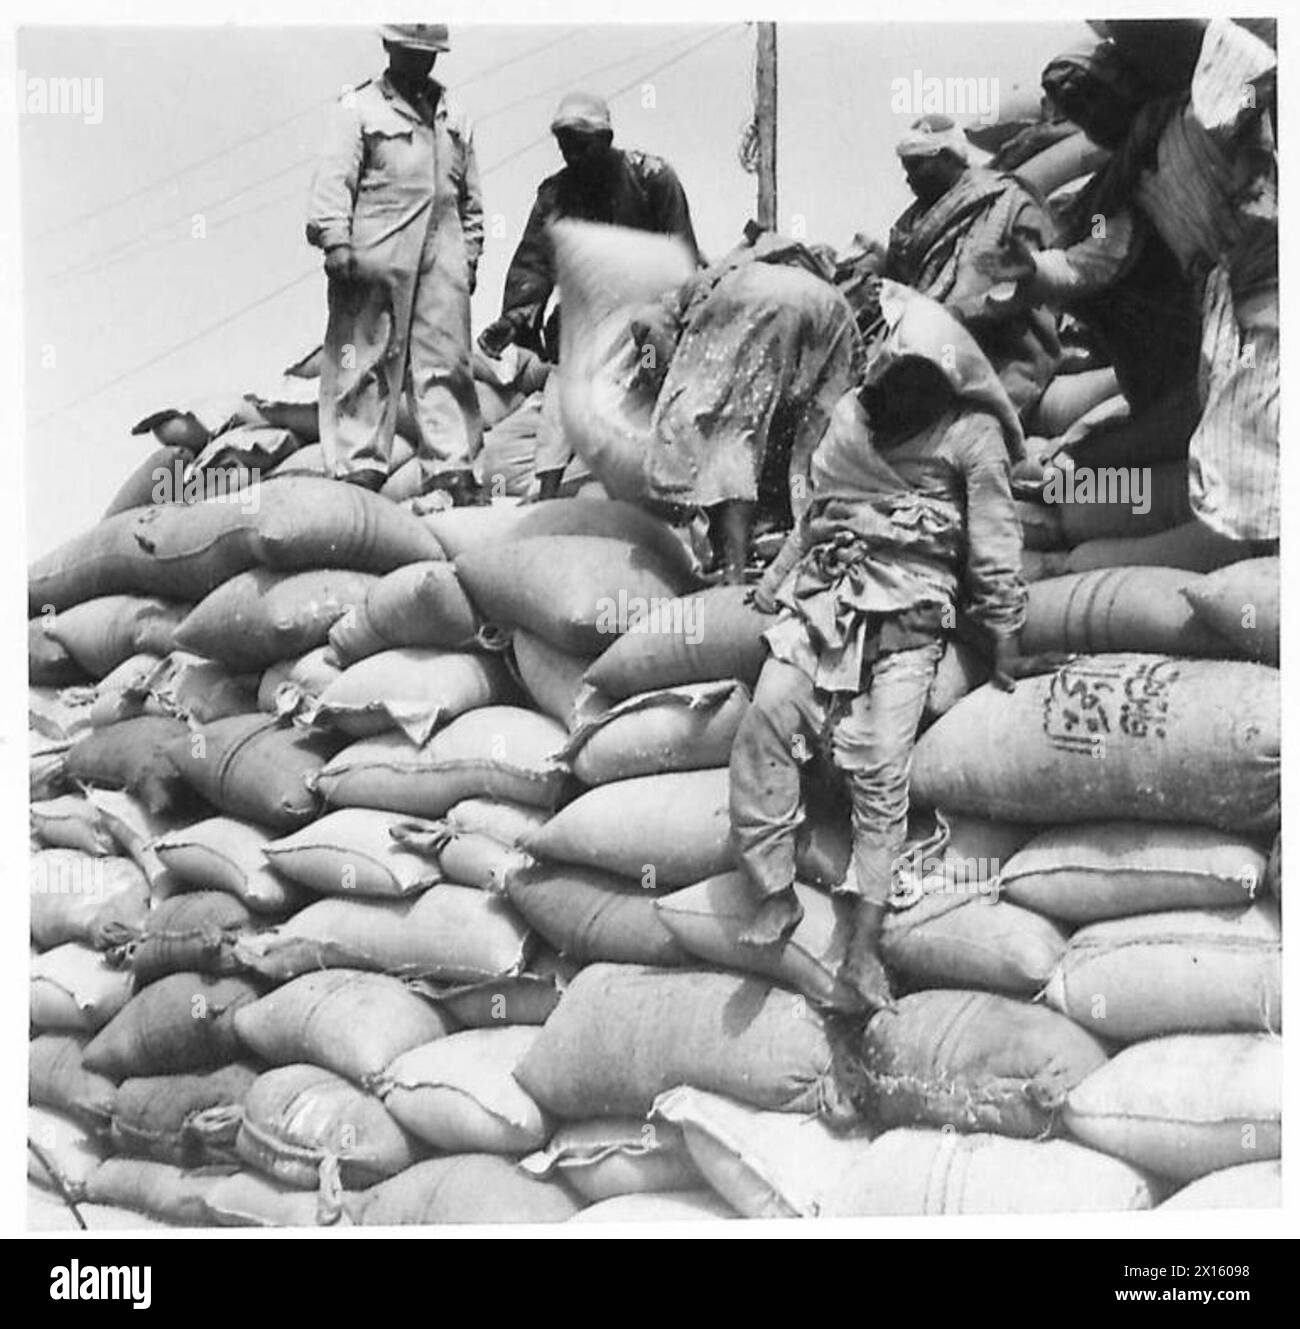 SUMINISTROS DE ALIMENTOS PARA EL MEDIO ORIENTE - Nativos apilando los sacos del Ejército Británico de Trigo Foto de stock